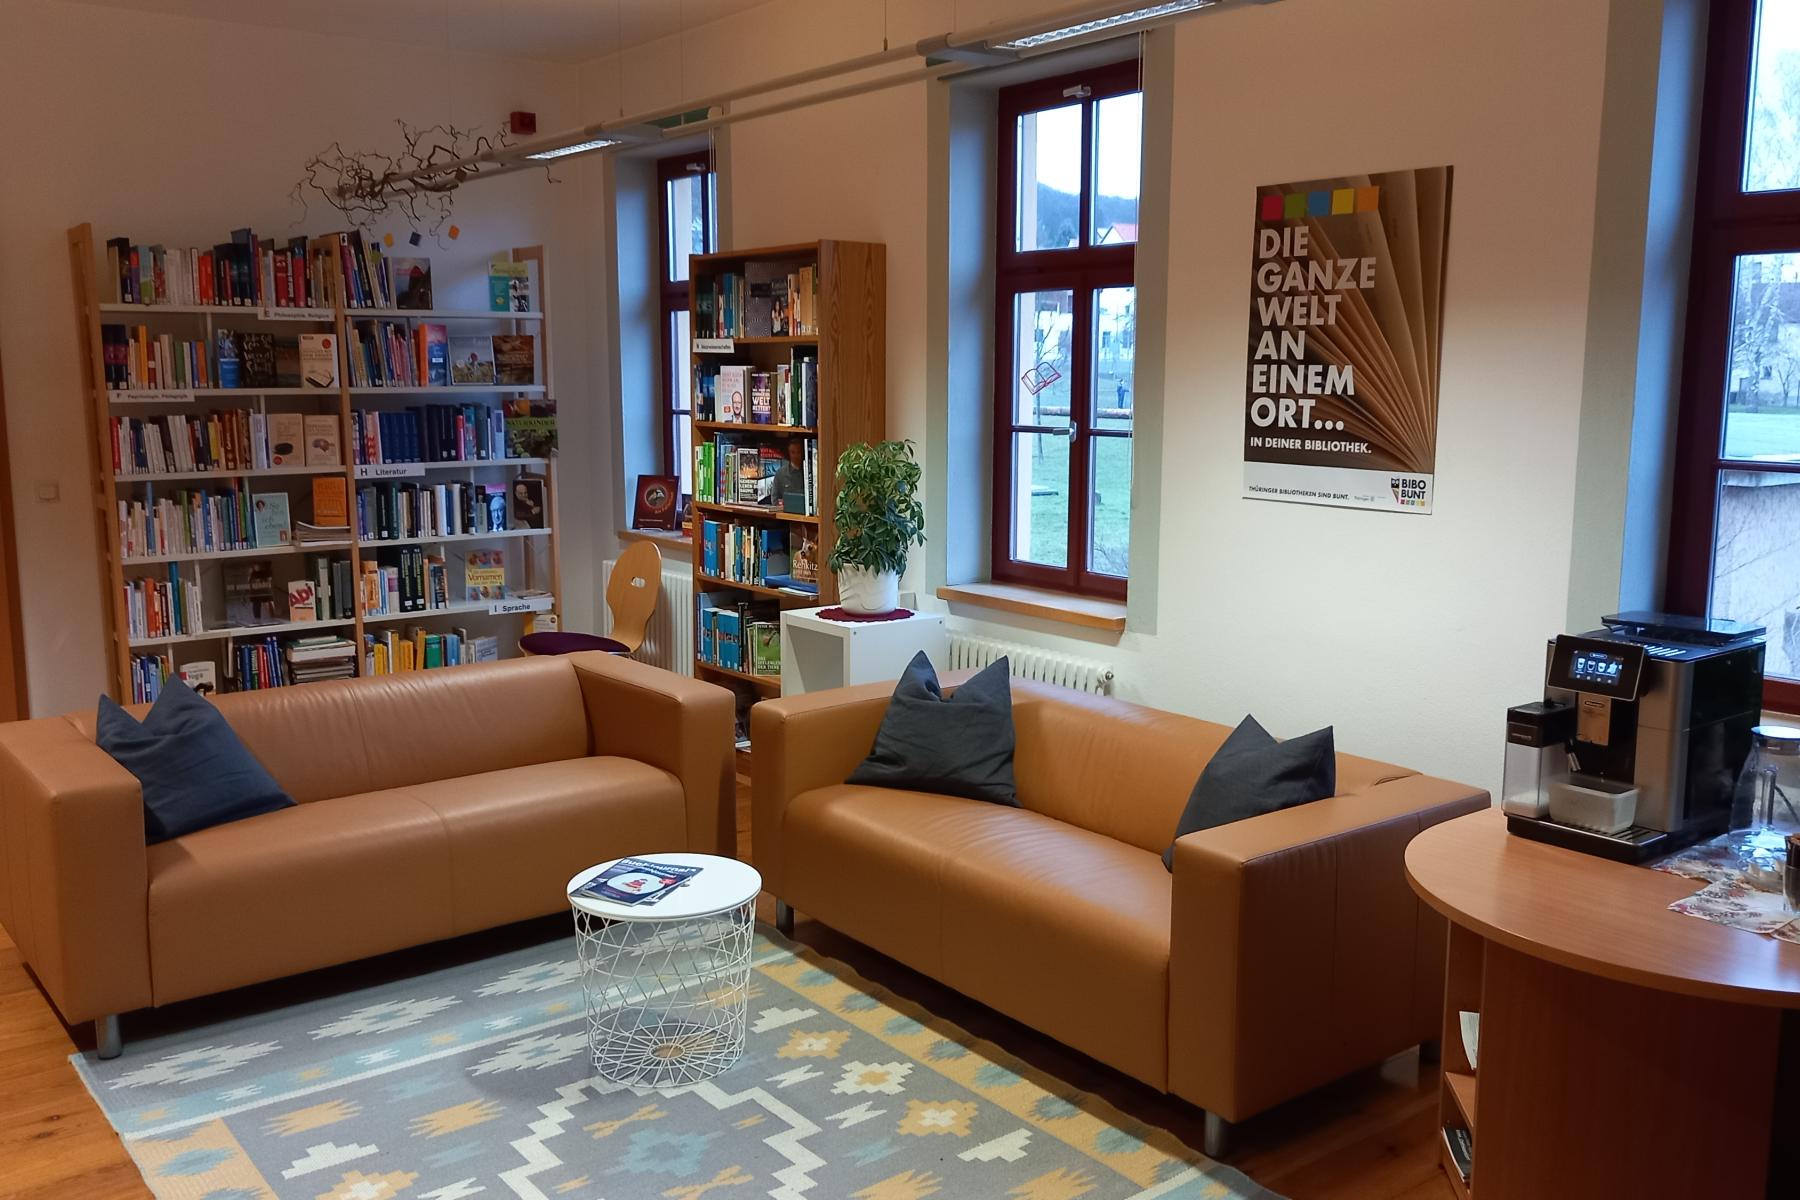 Sofaecke mit braucnen Sofas zum Lesen in der Bibliothek. Im Hintergrund Bücherregale.